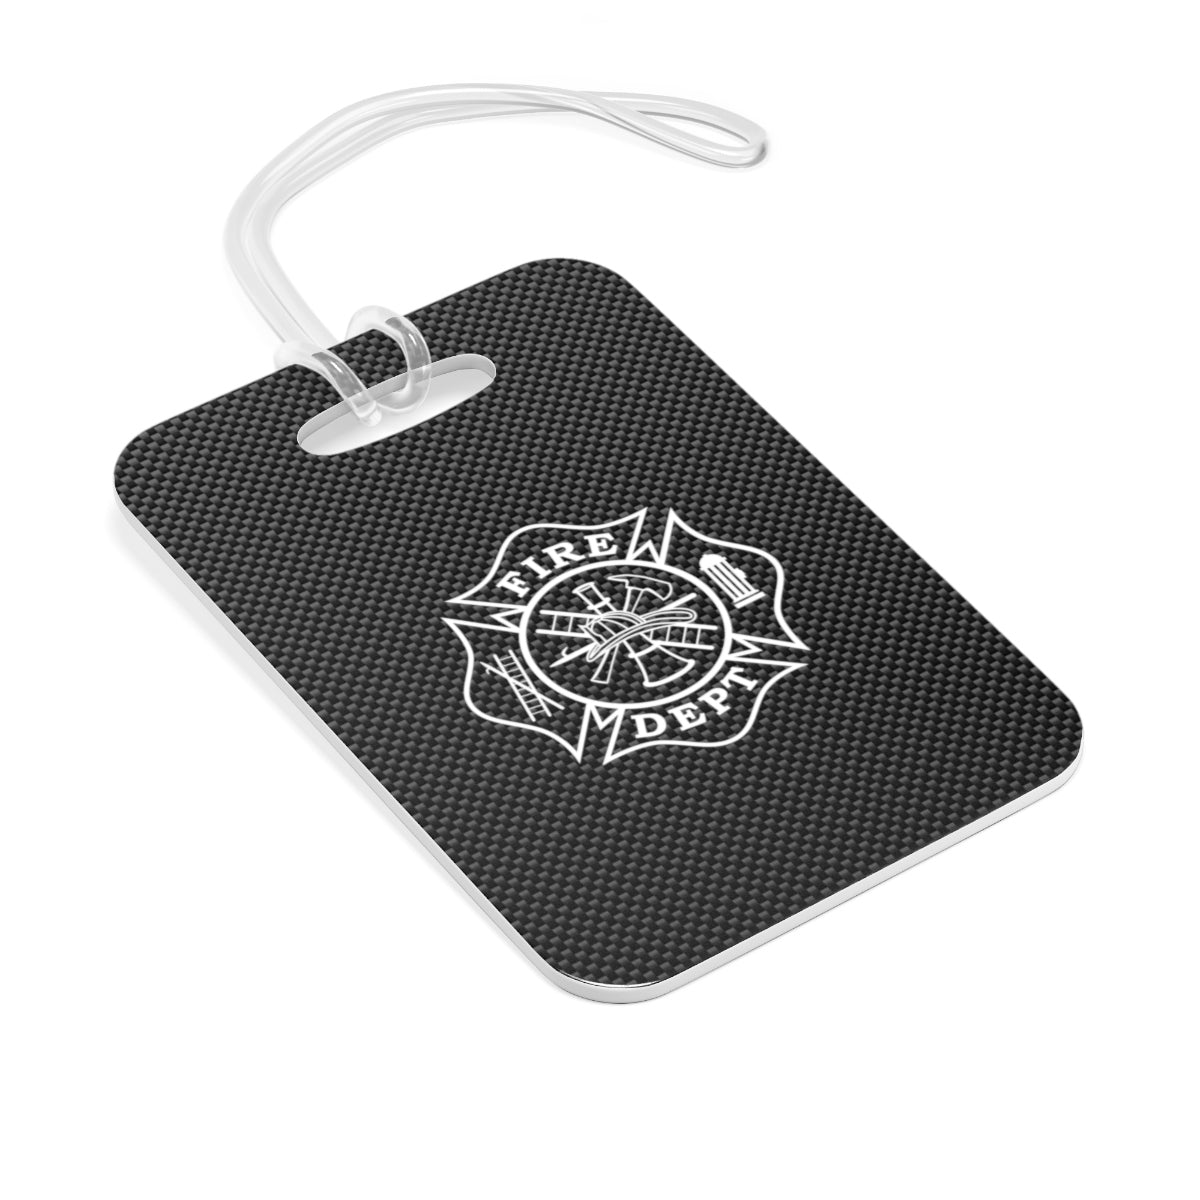 Firefighter Maltese Cross Carbon Fiber Printed Bag Tag - firestationstore.com